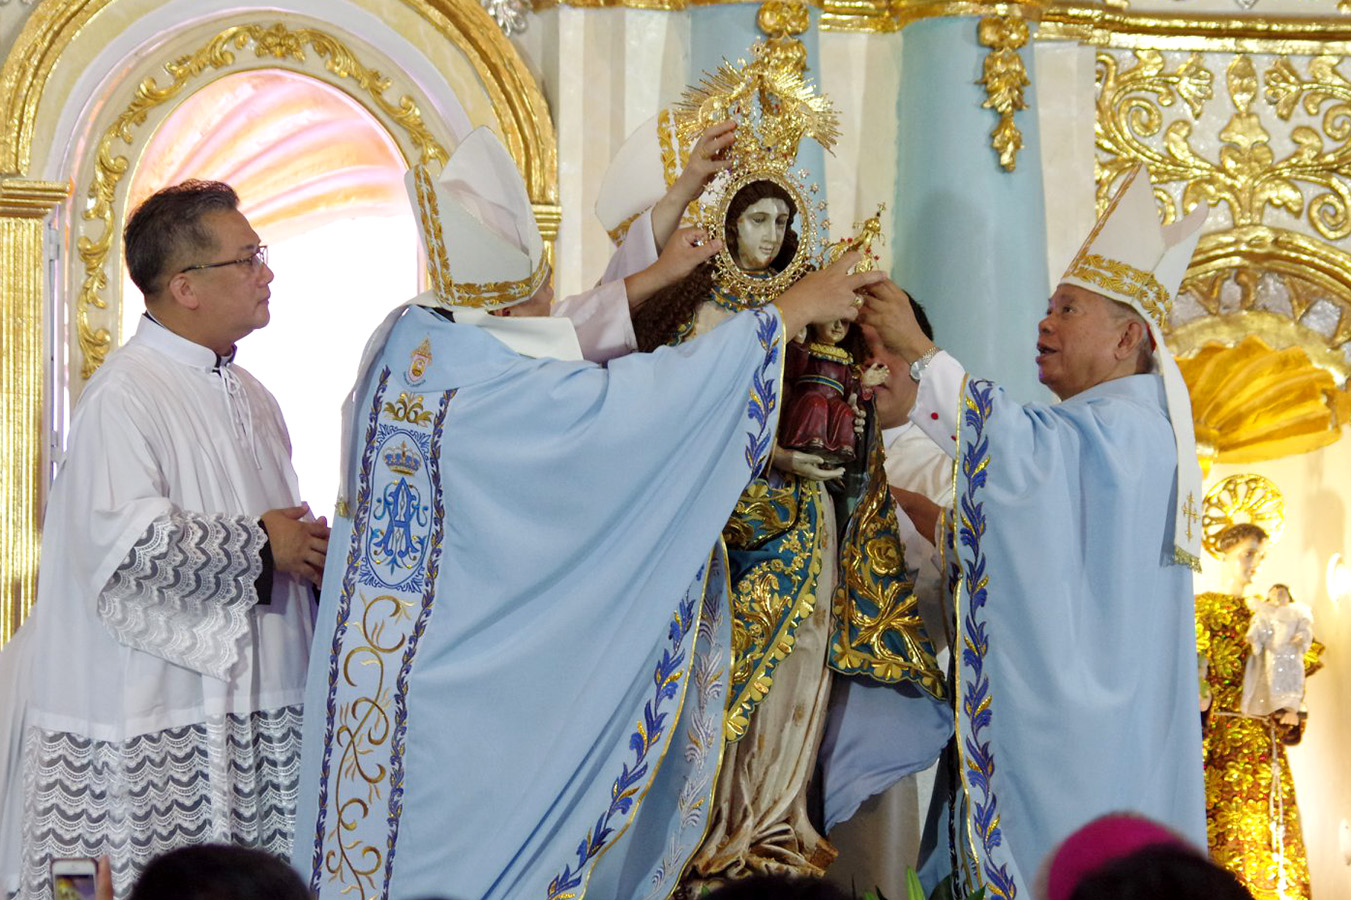 ‘Great joy’ in Ilocos Norte as Patroness receives Pontifical Coronation